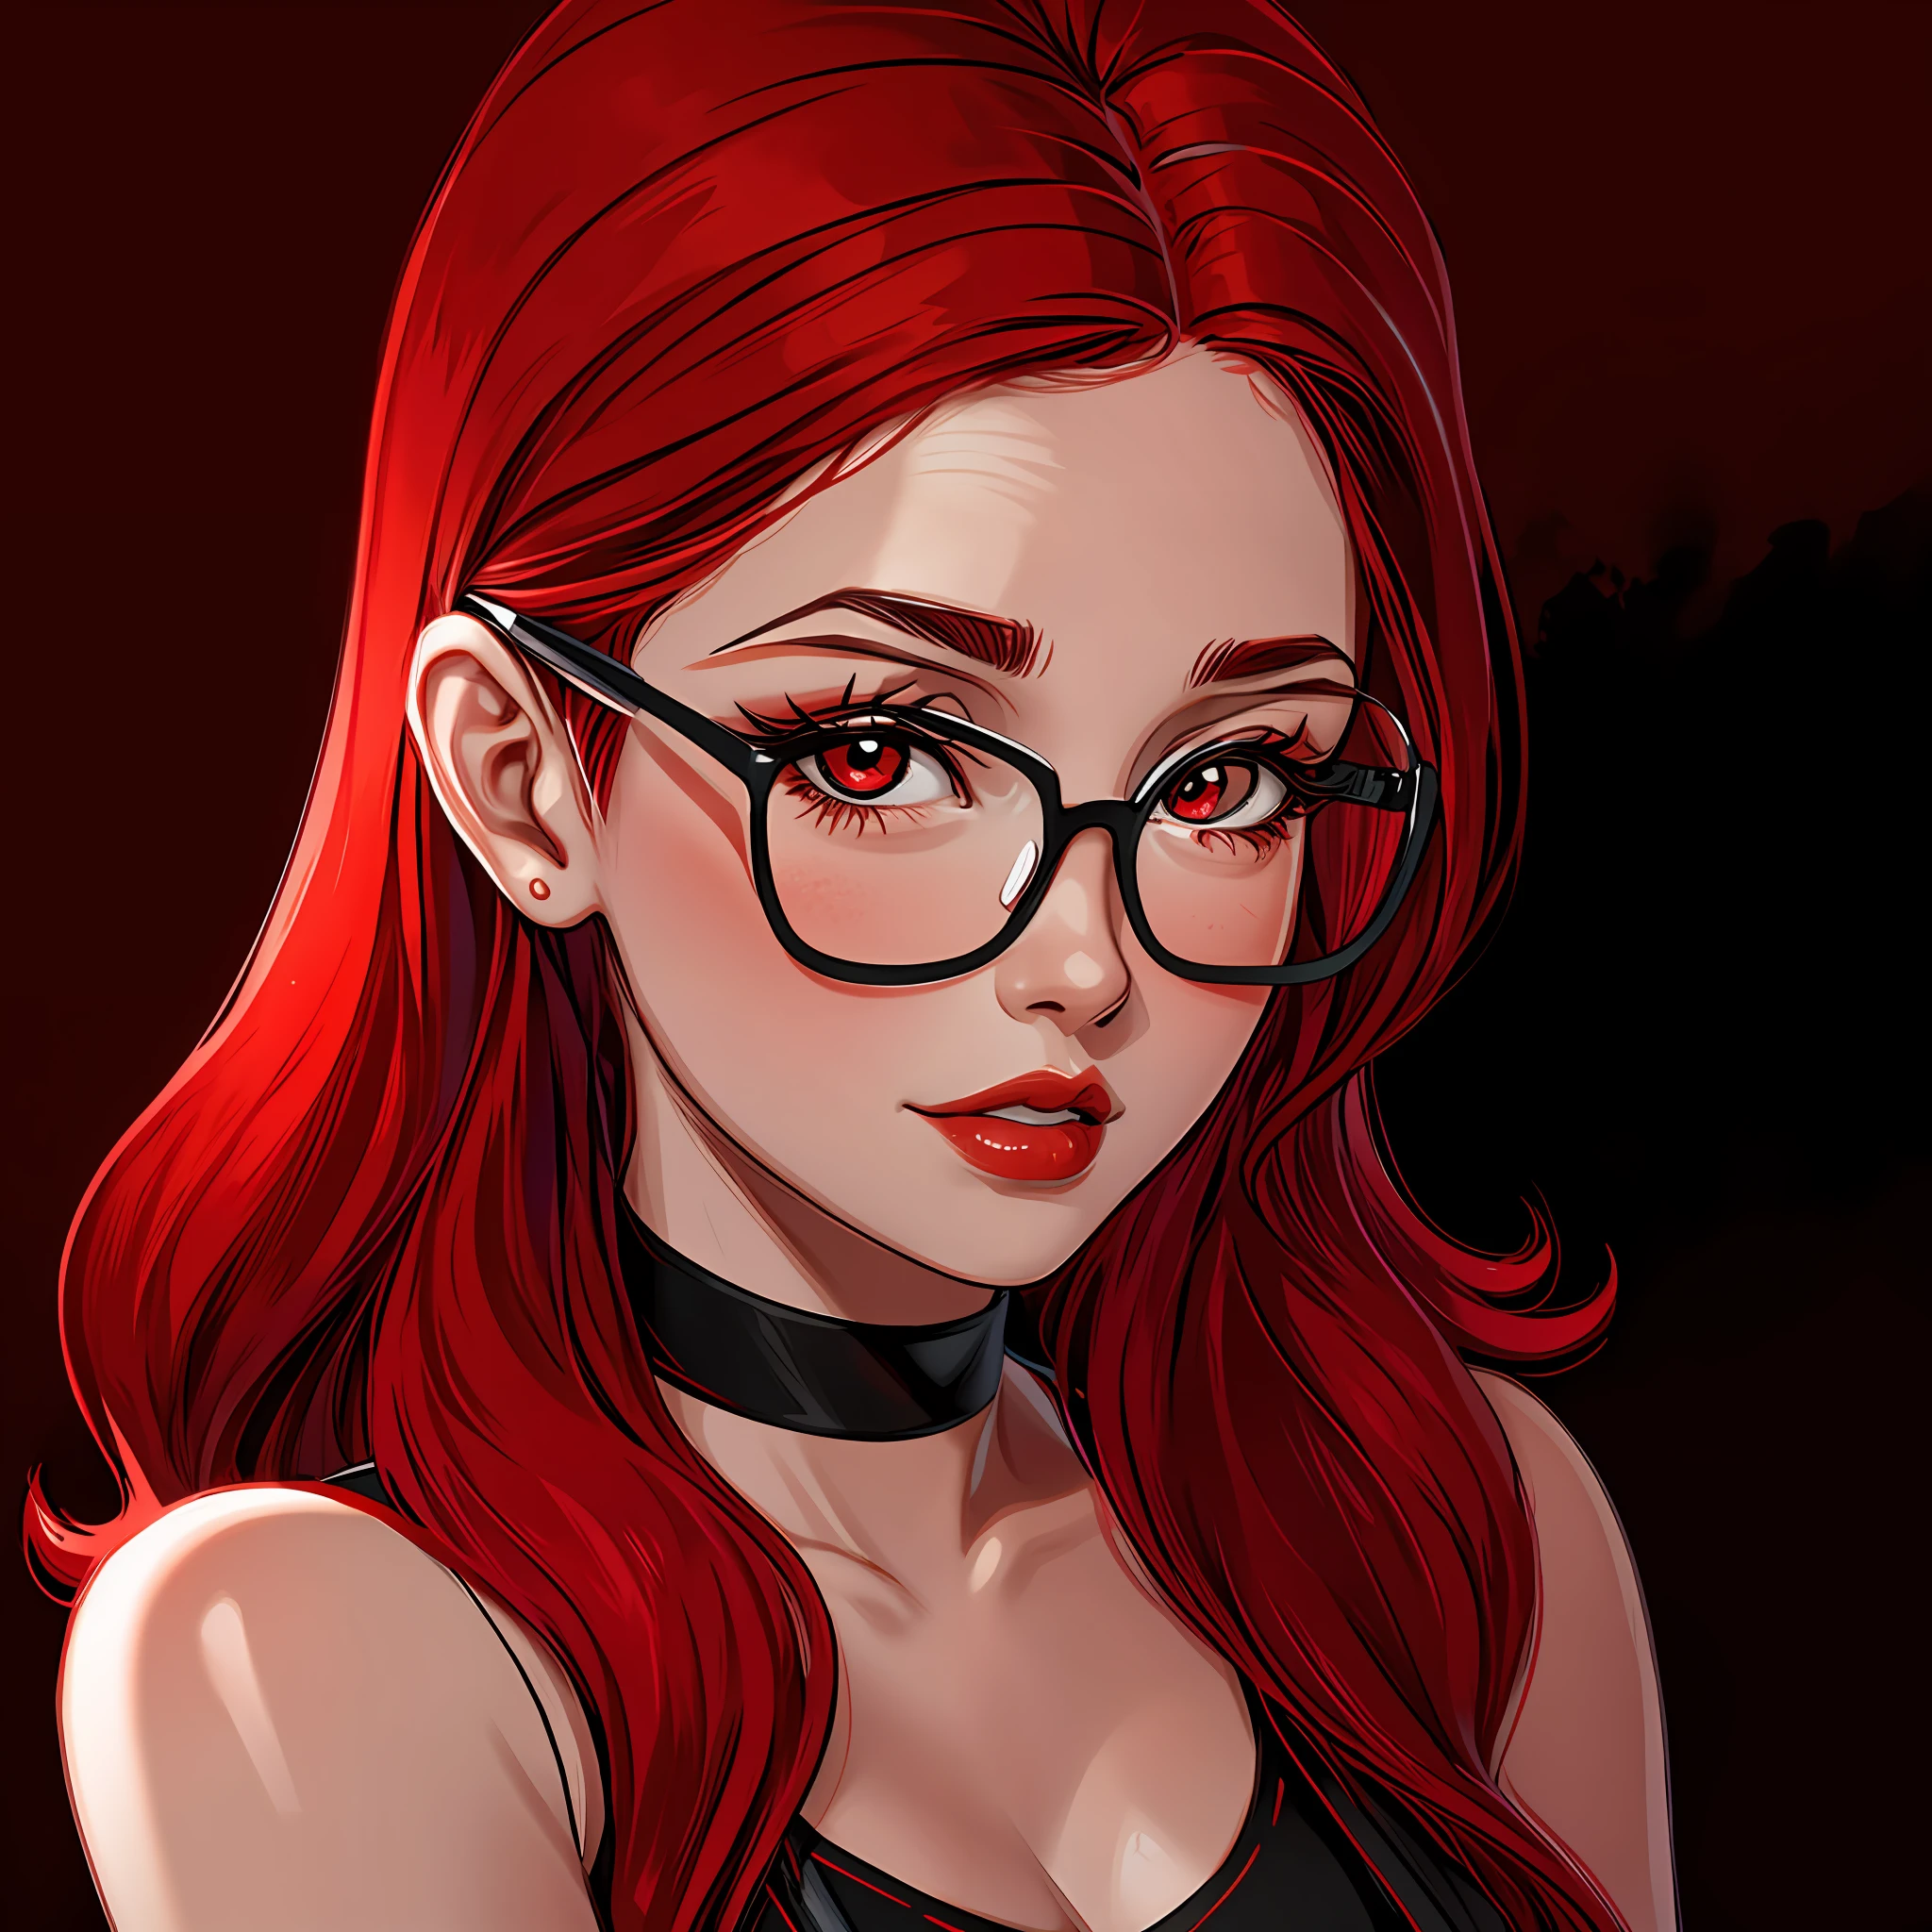 a woman red hair,fair skin,black background